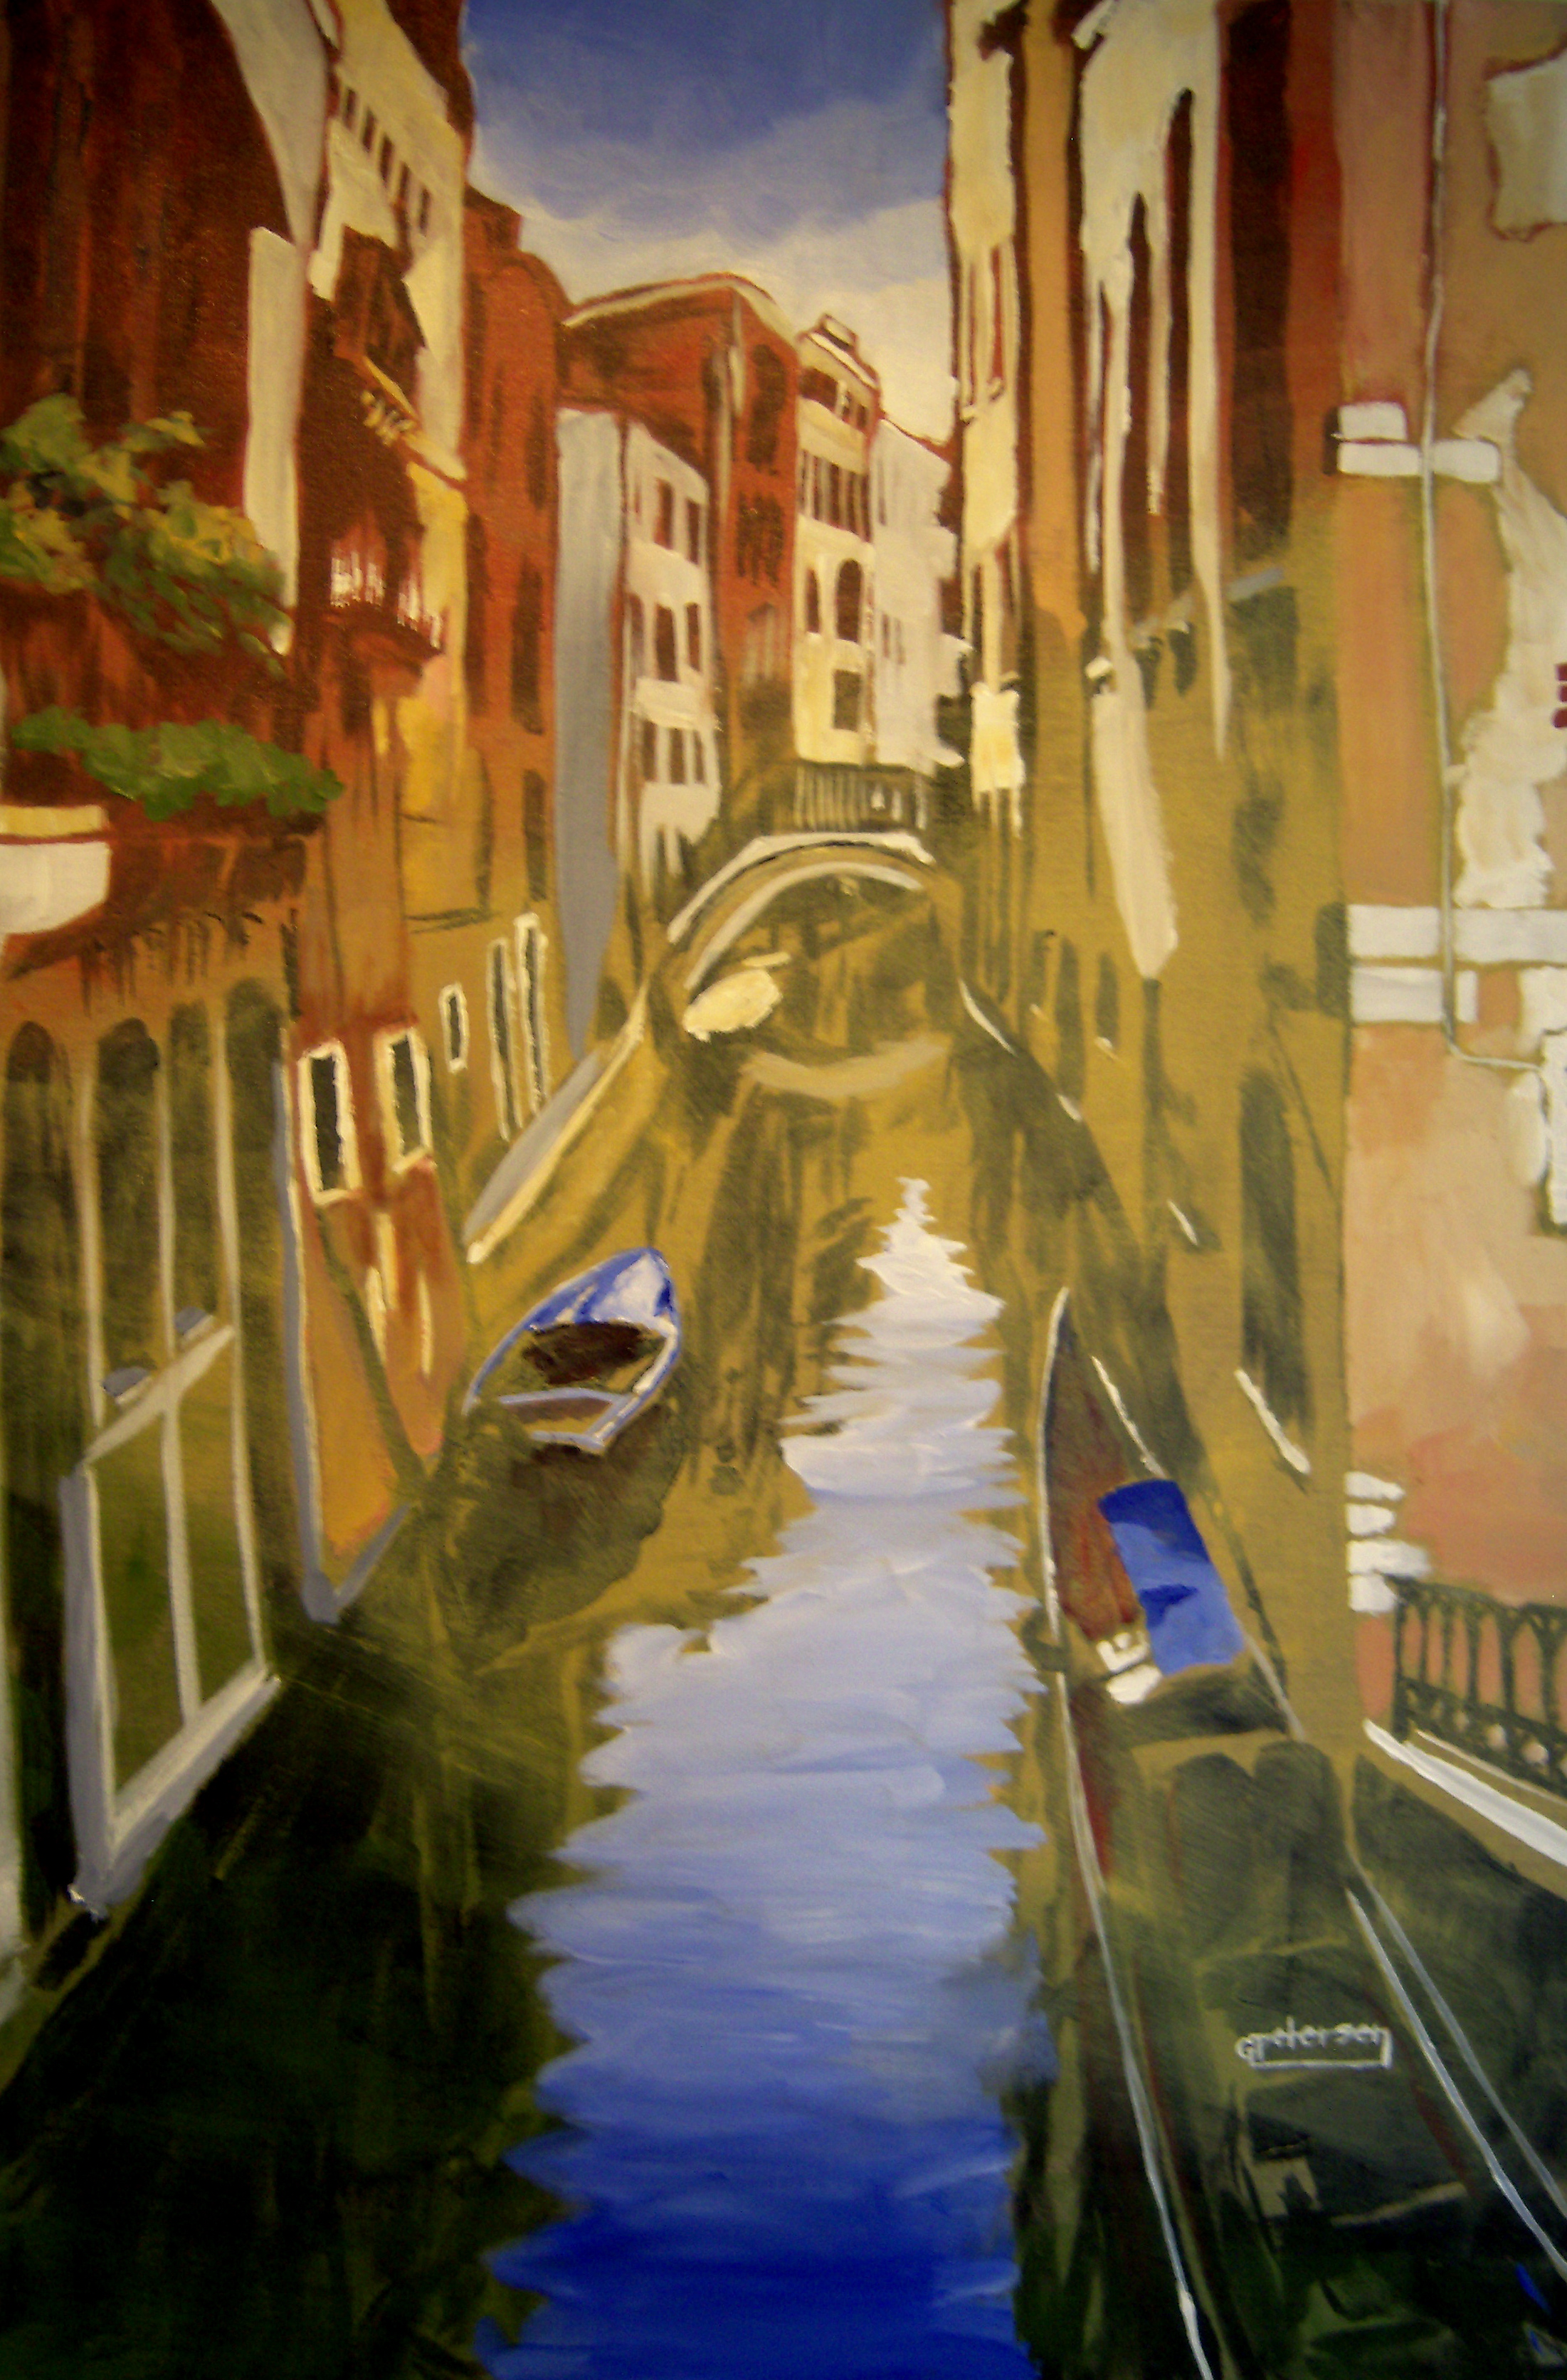 Venice Canal II